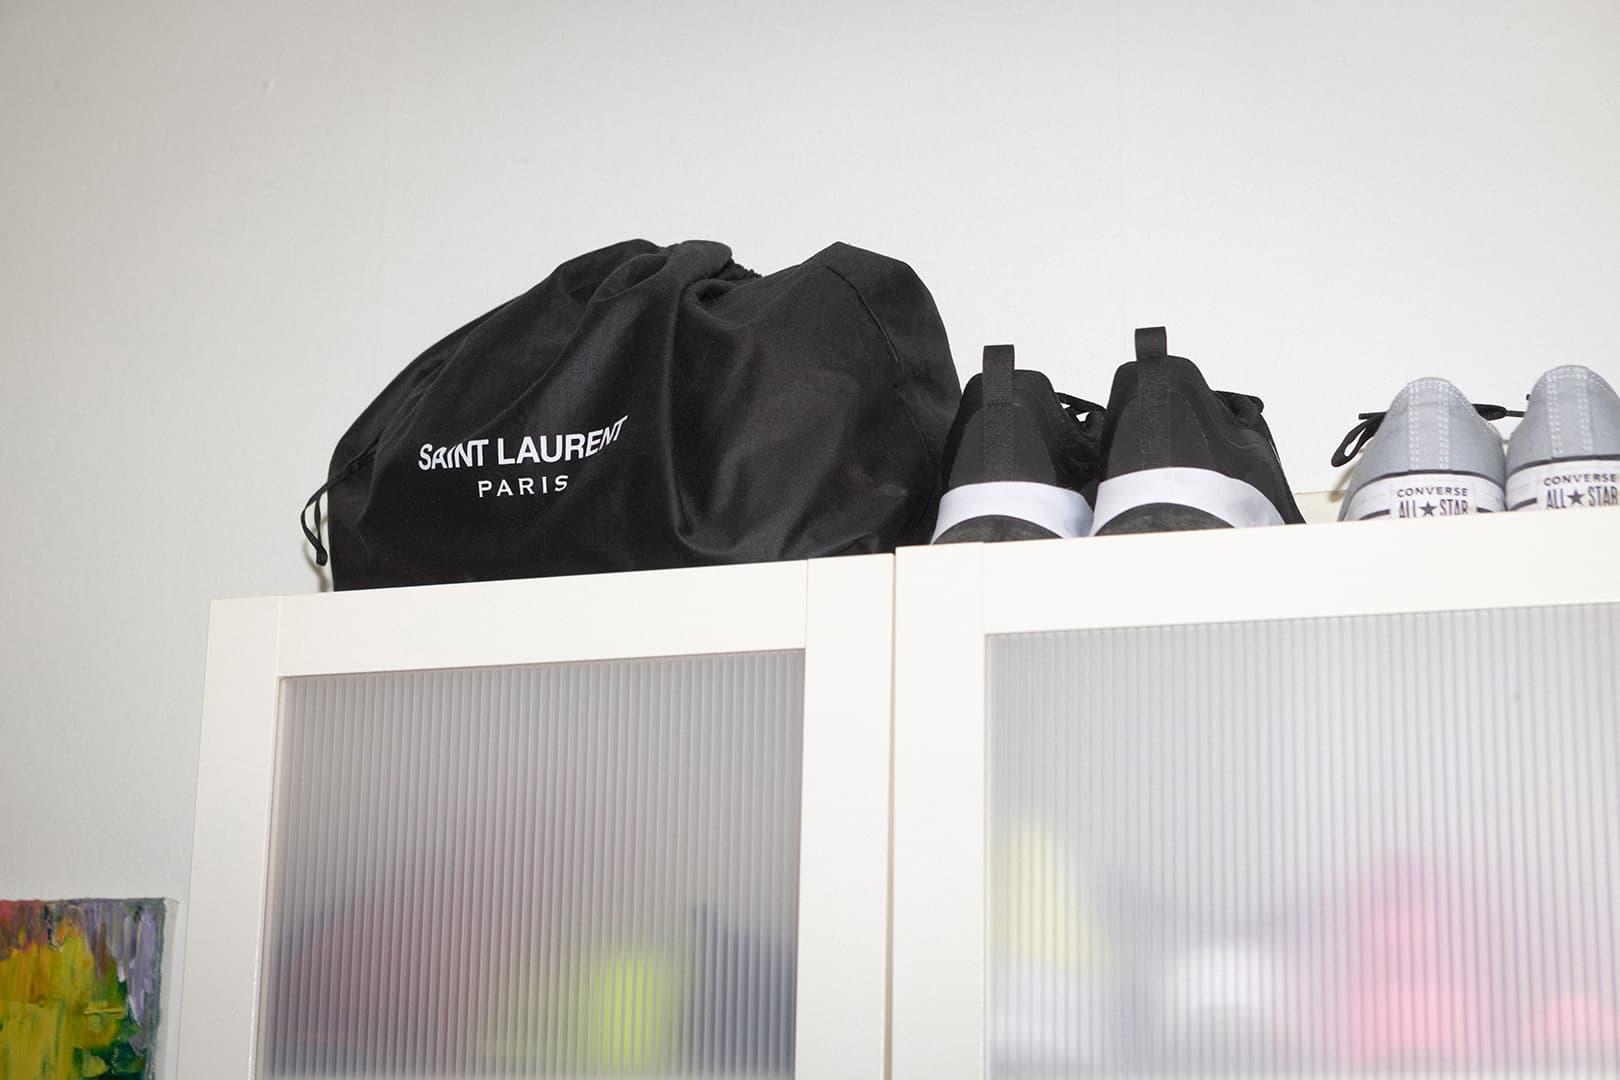 En svart kasse med text på står brevid två par skor ovanpå en garderob.